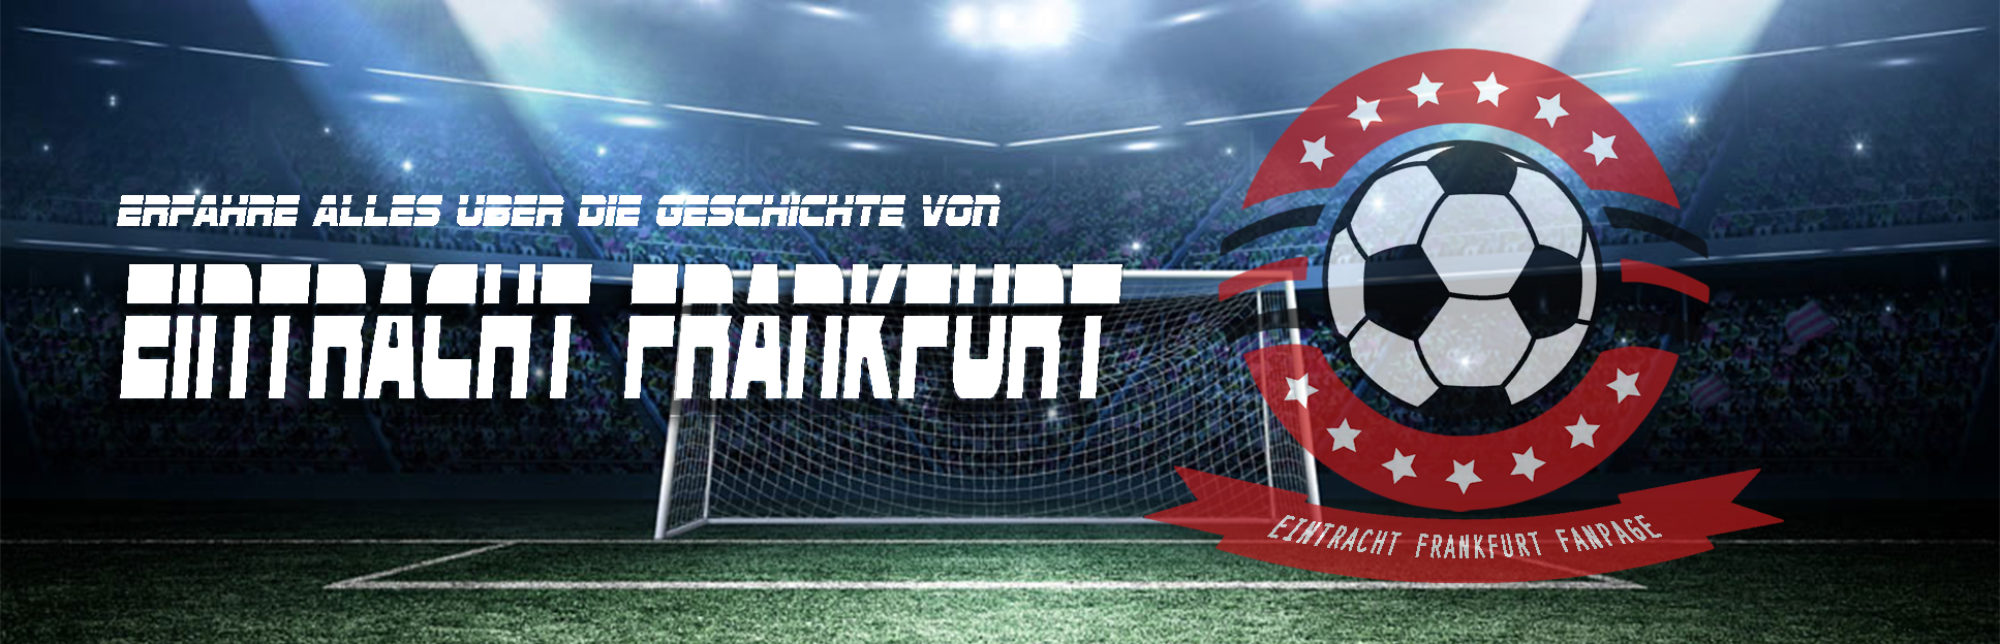 Eintracht Frankfurt - Fanpage